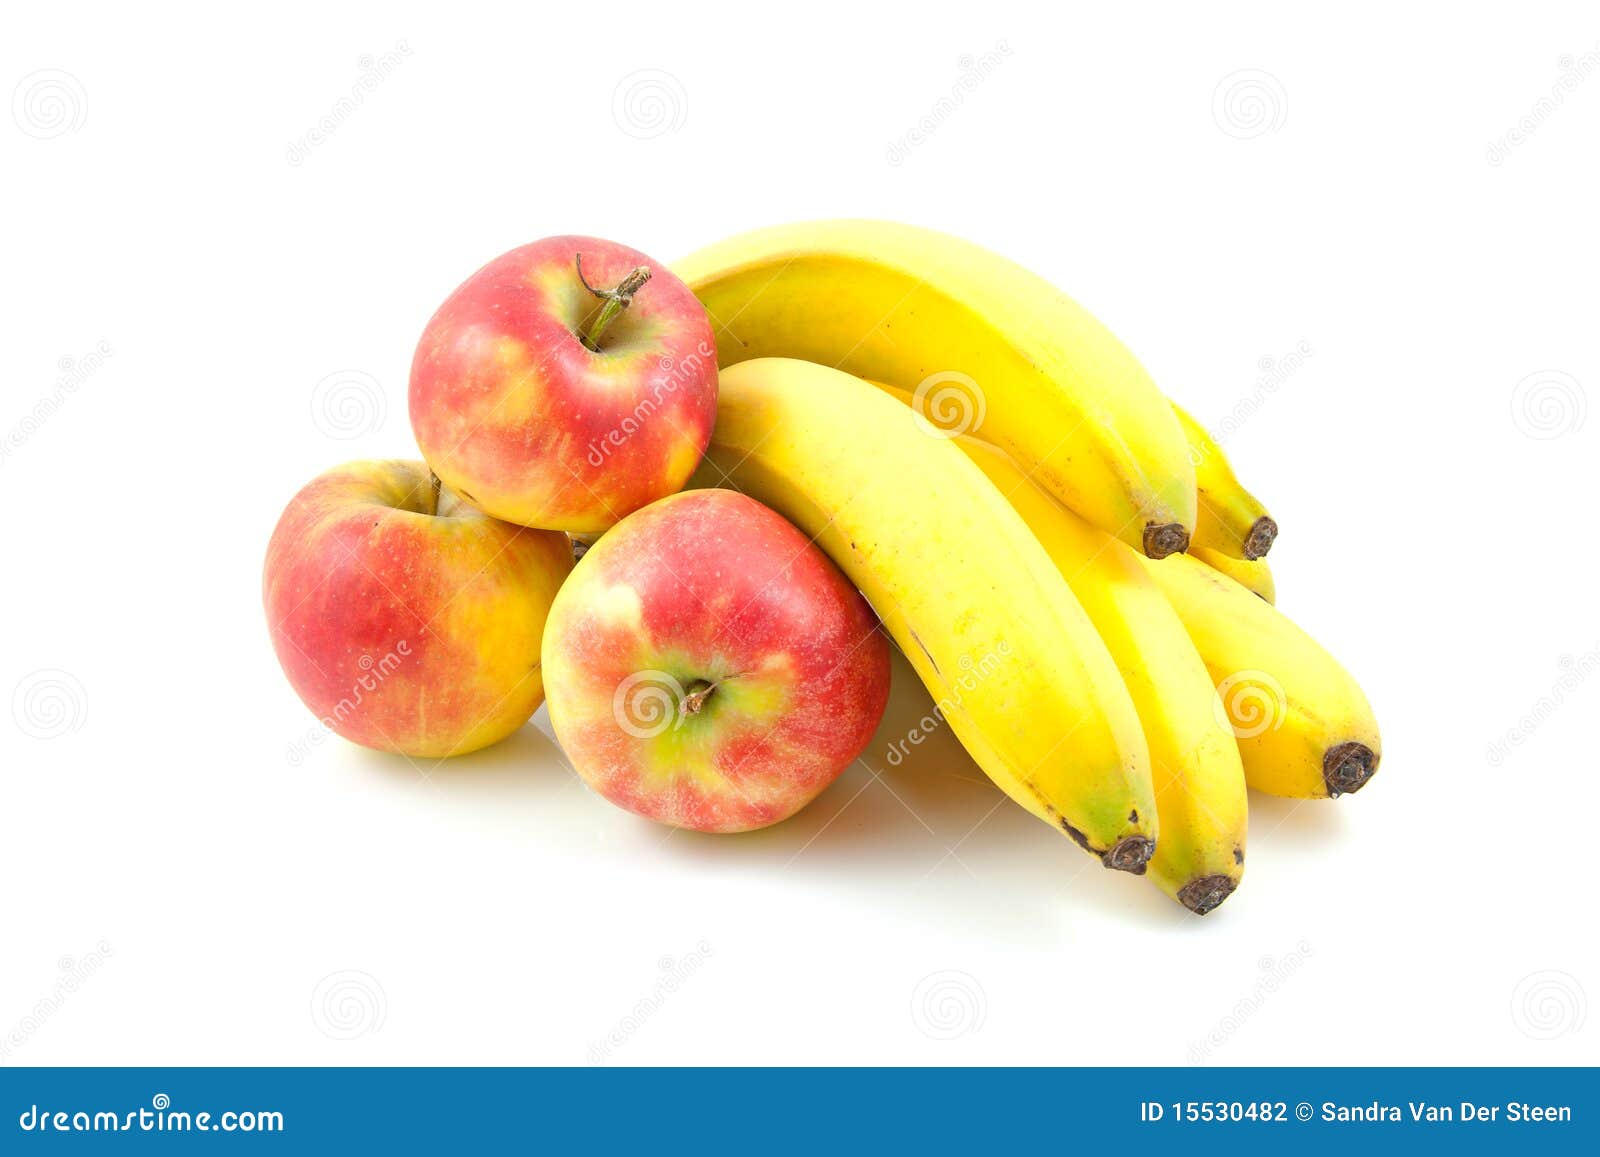 苹果 香蕉 水果 - Pixabay上的免费照片 - Pixabay